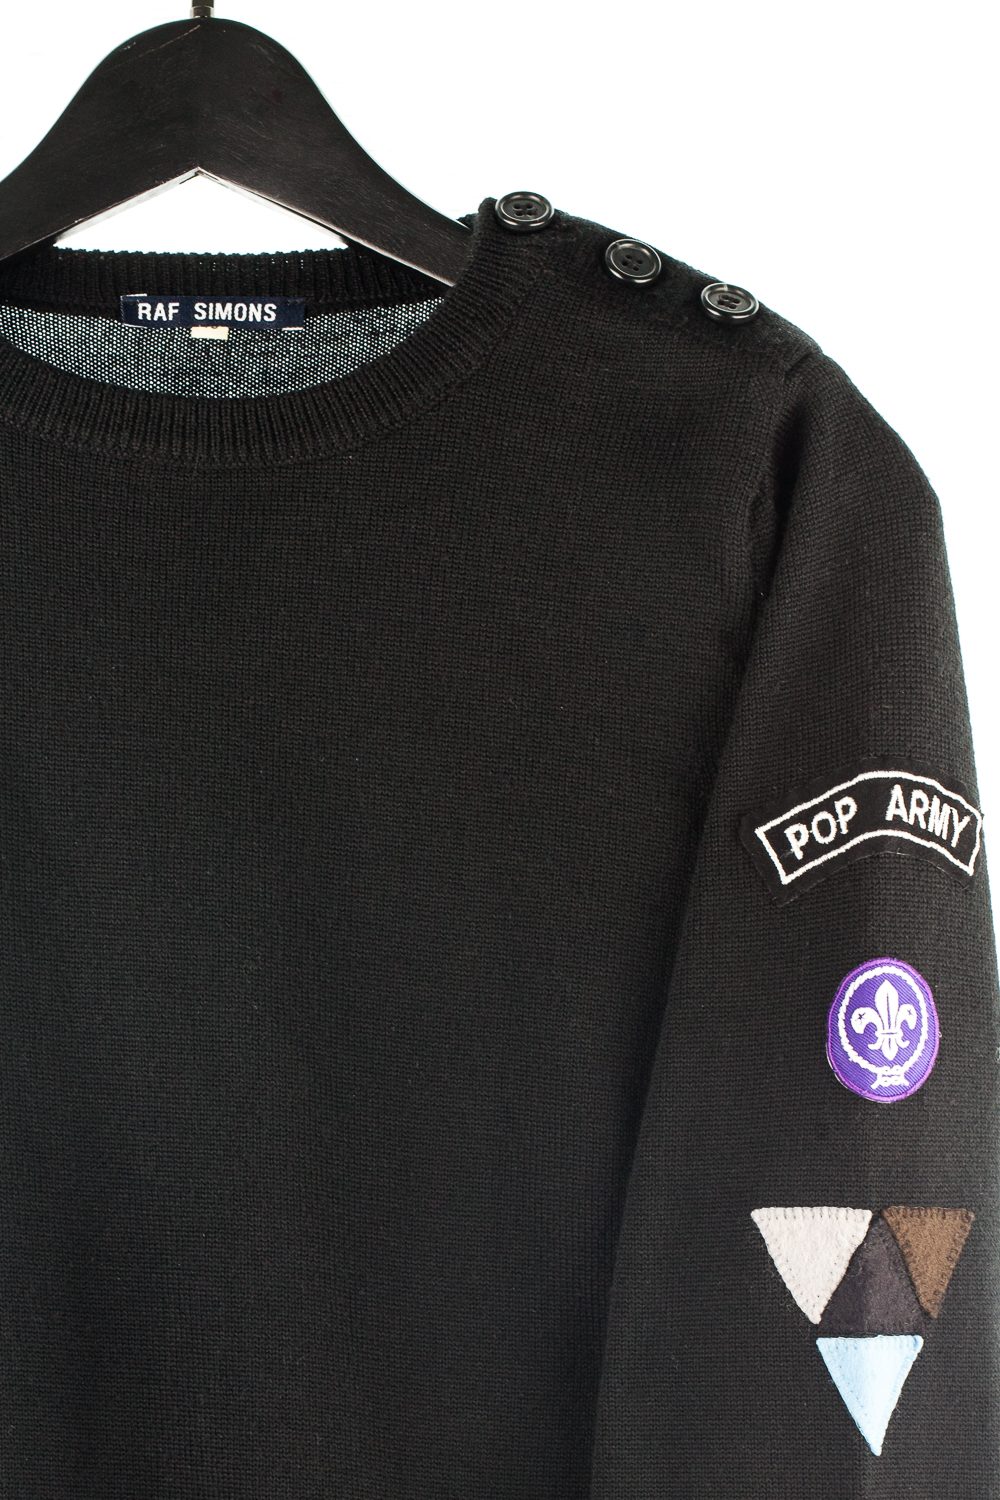 FW96 “Pop Army” Sweater